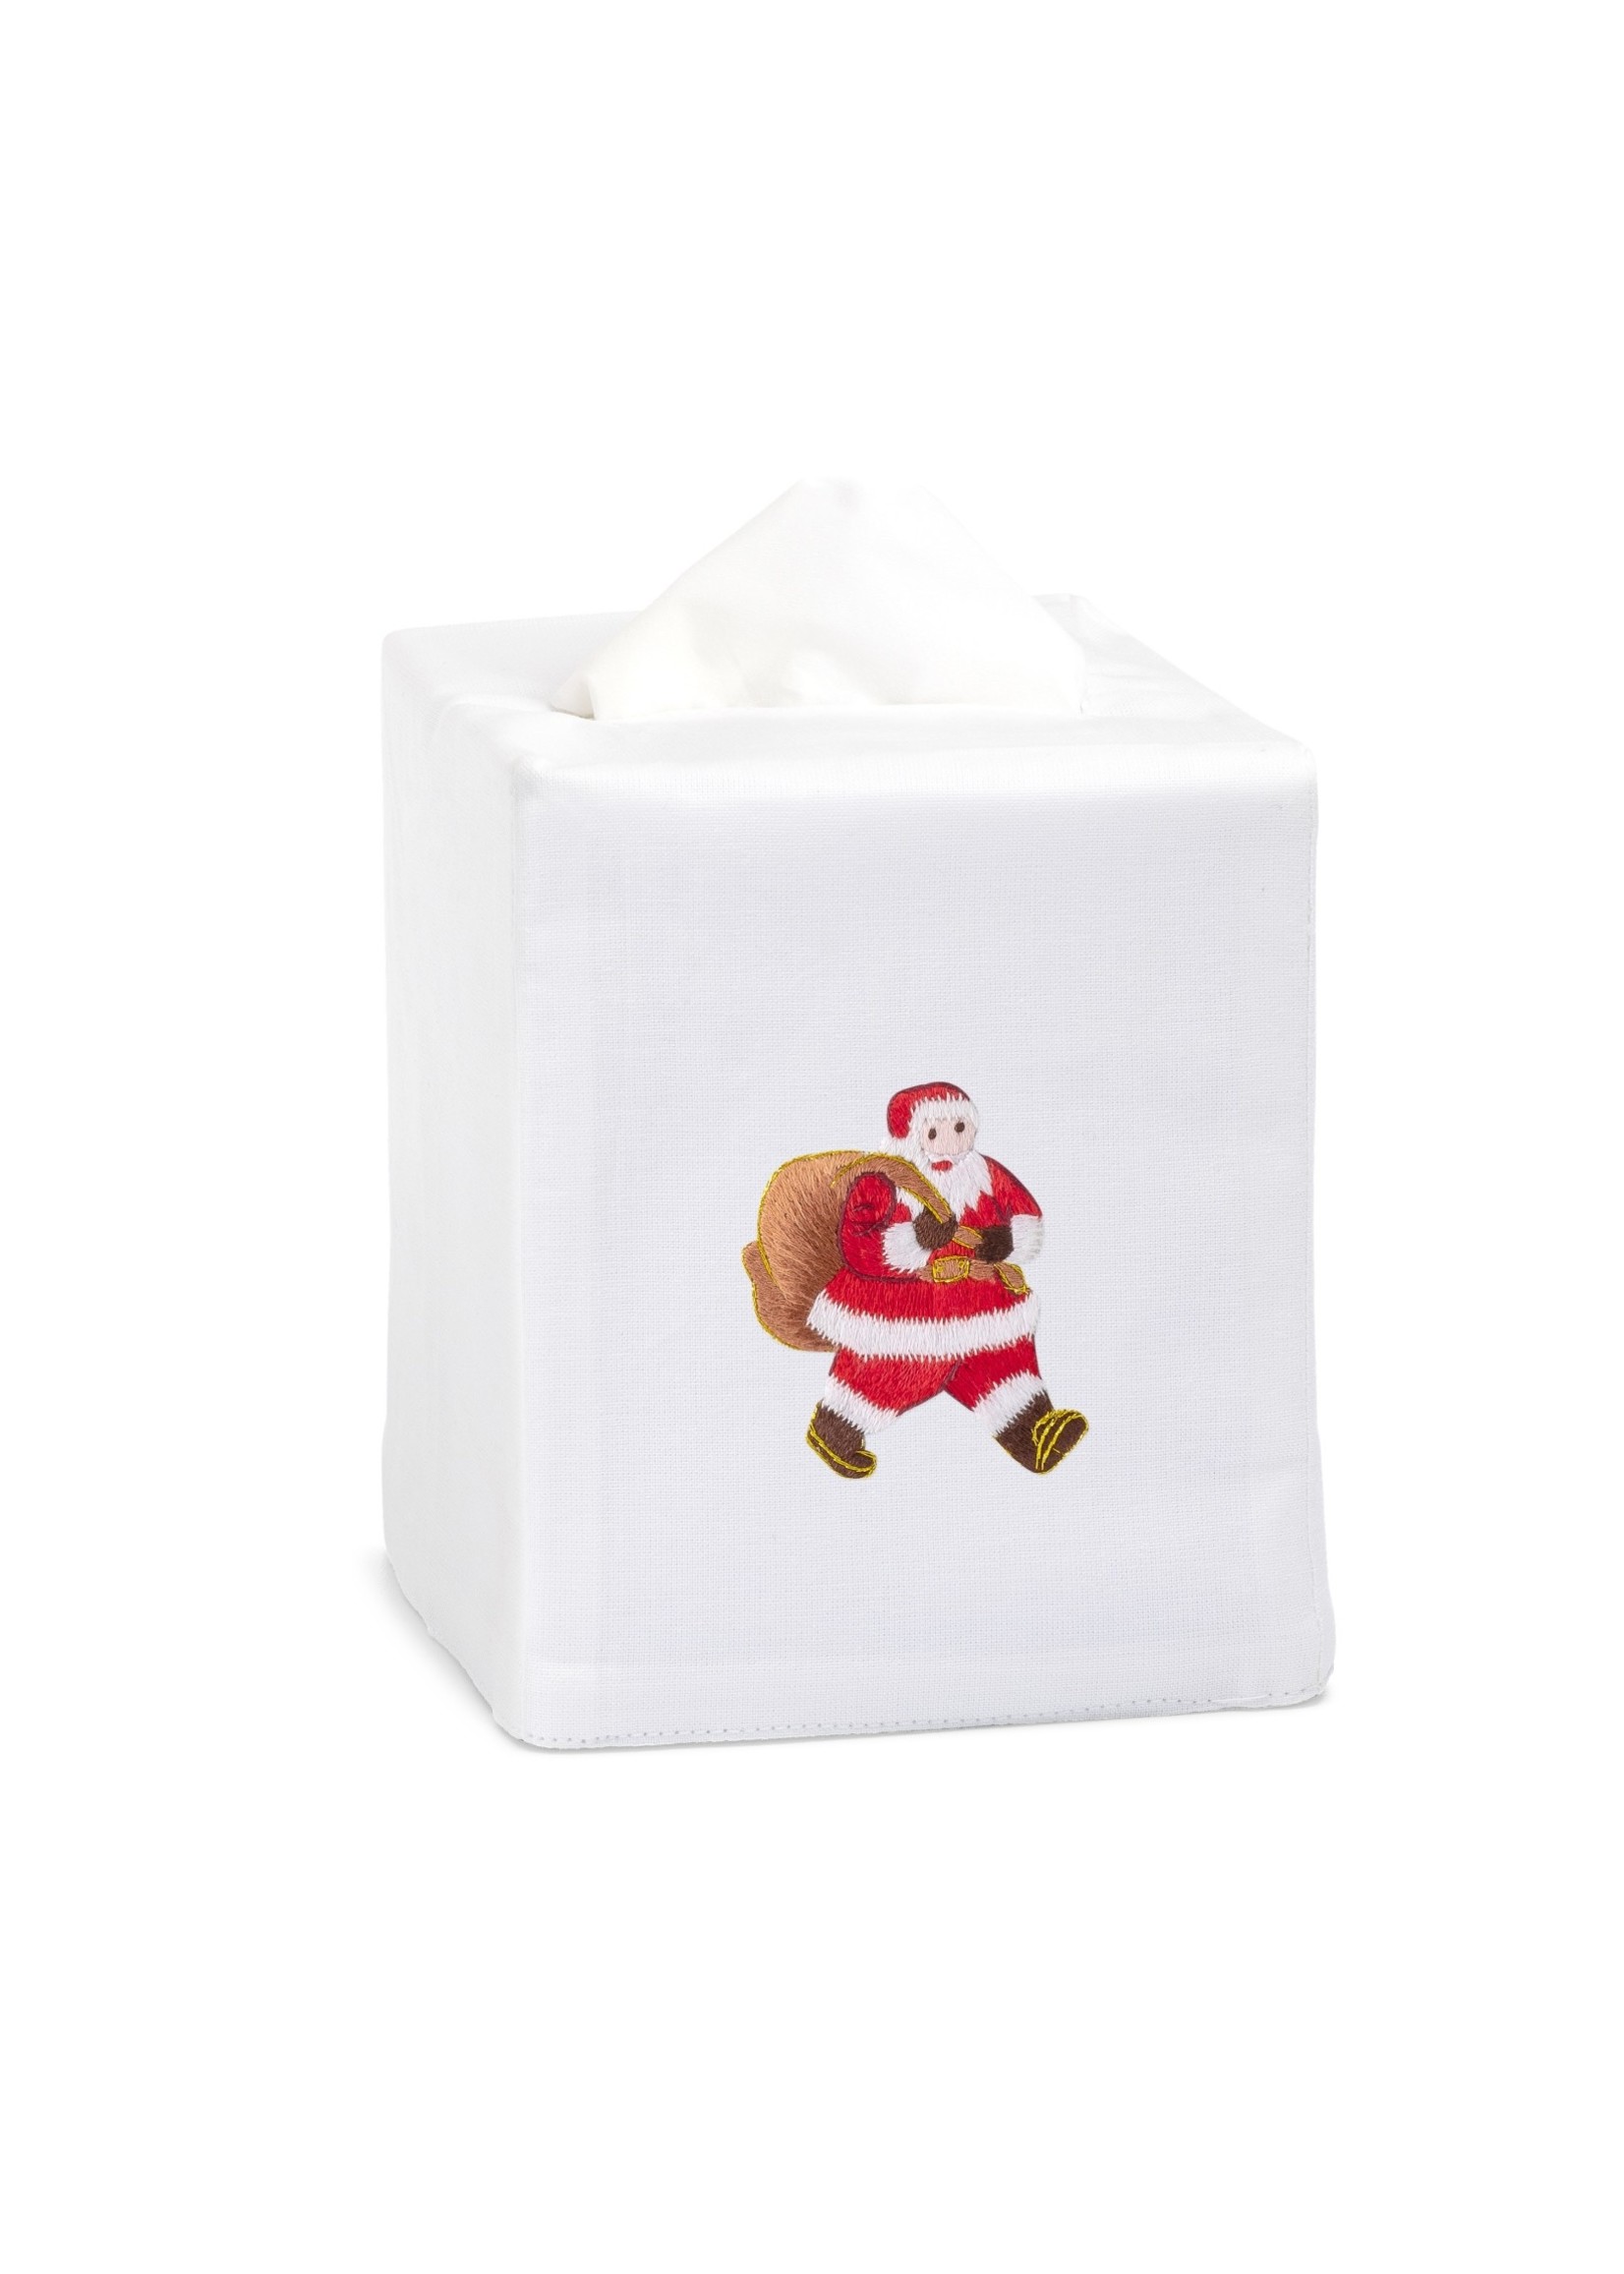 Henry Handwork Tissue Box Cover - Santa